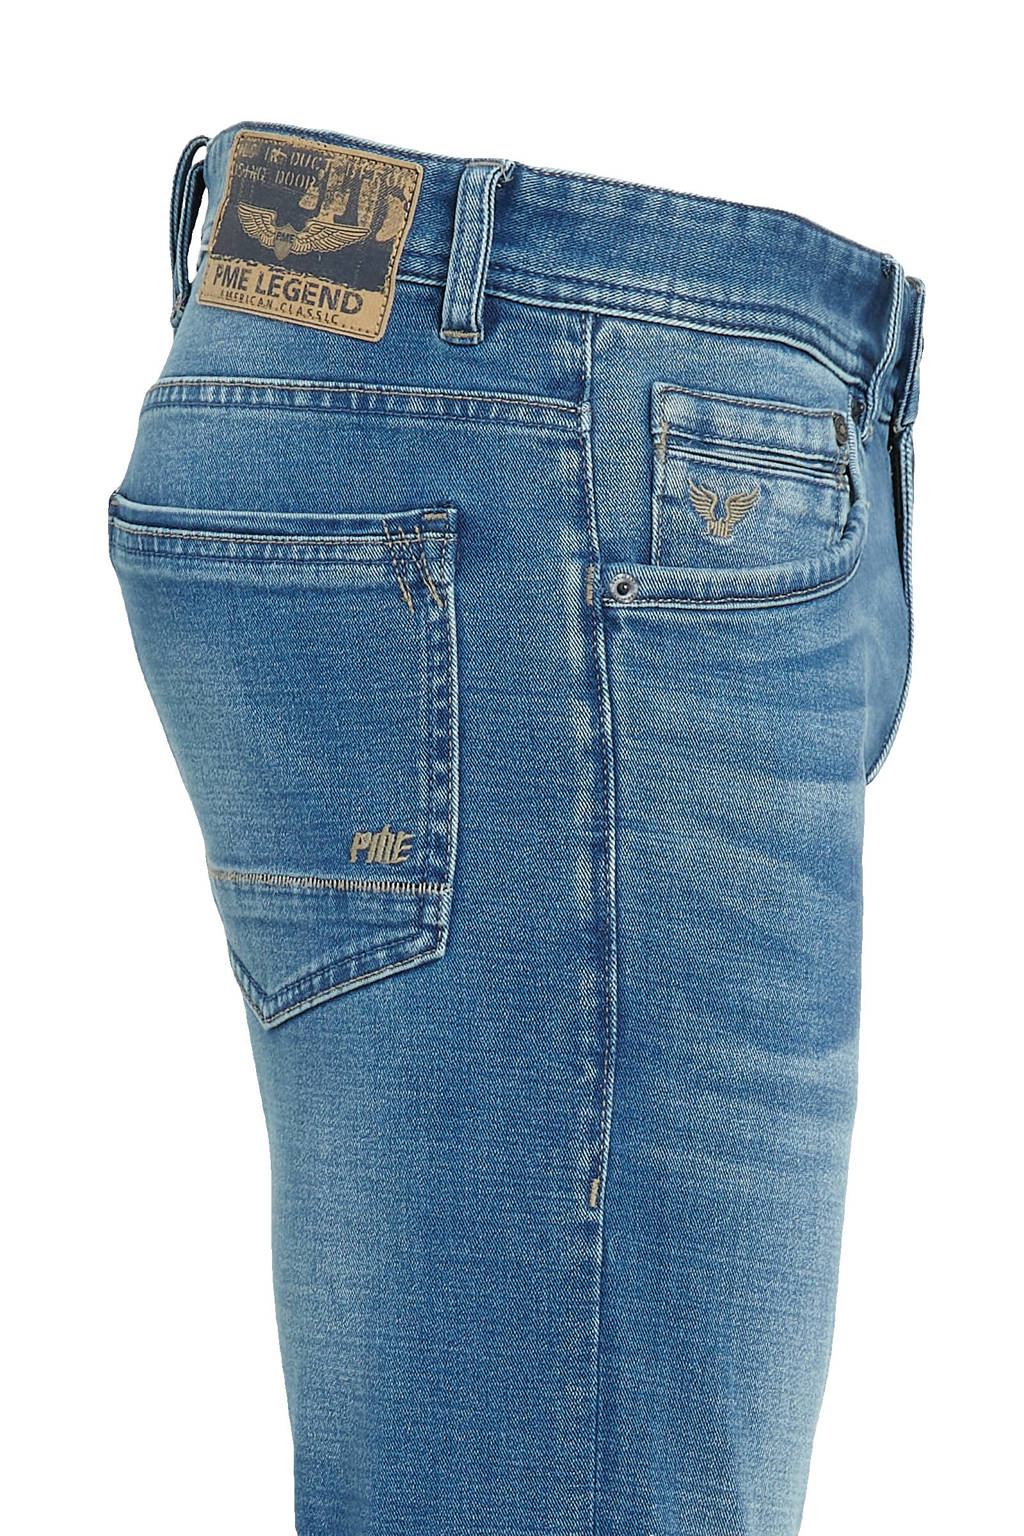 jeans Legend Union | fit blue Tailwheel PME soft mid River slim